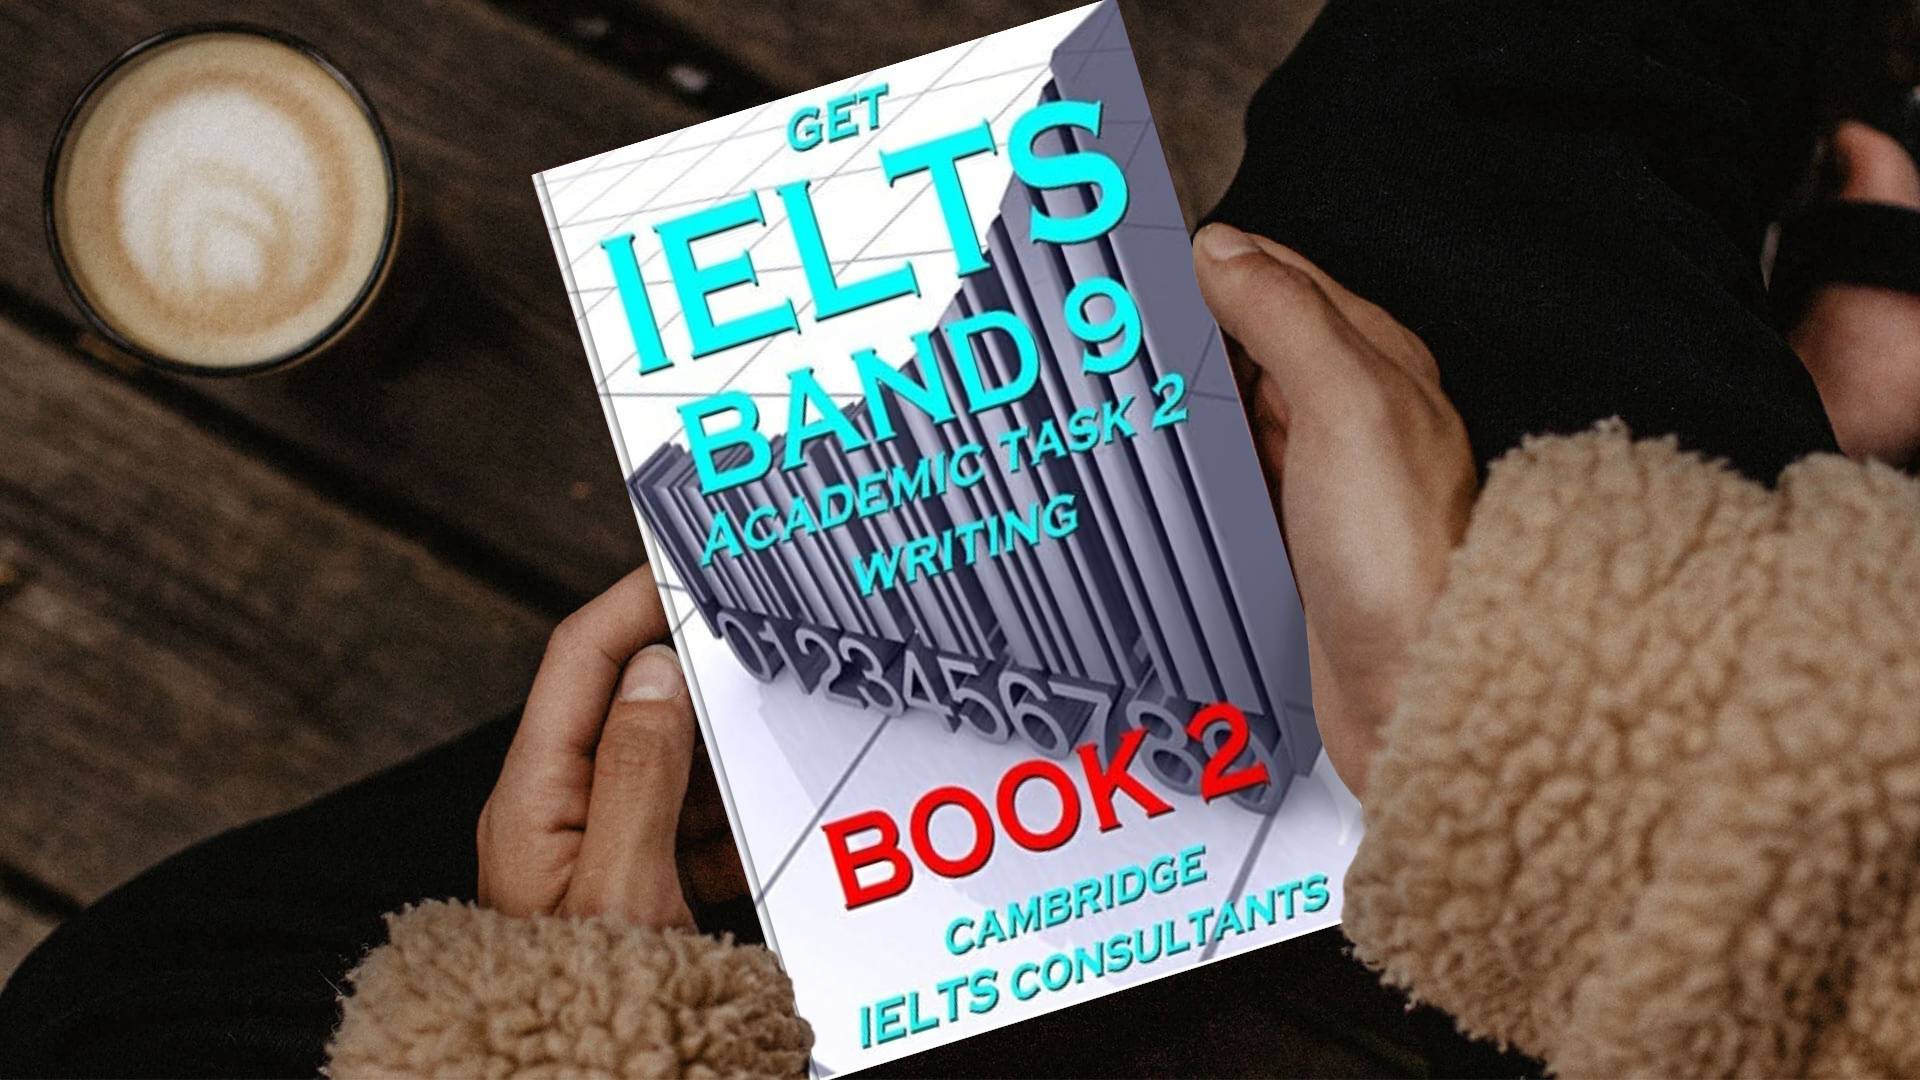 خرید کتاب زبان | فروشگاه اینترنتی کتاب زبان | Get IELTS band 9 in Academic Writing Task 2 Book 2 | گت آیلتس باند 9 این آکادمیک رایتینگ